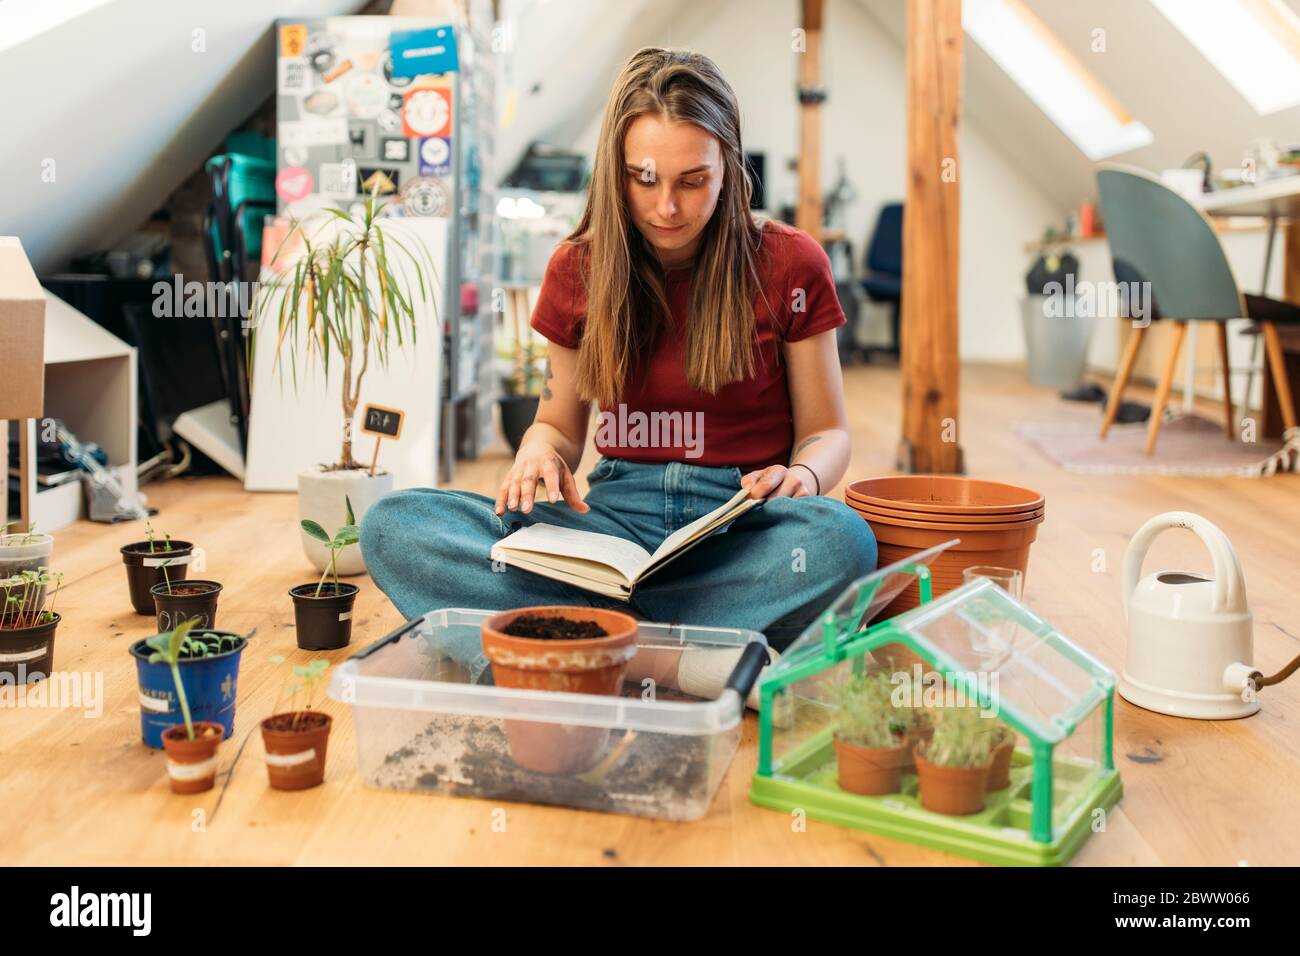 Junge Frau liest Buch neben Pflanzen auf Holzboden Stockfoto